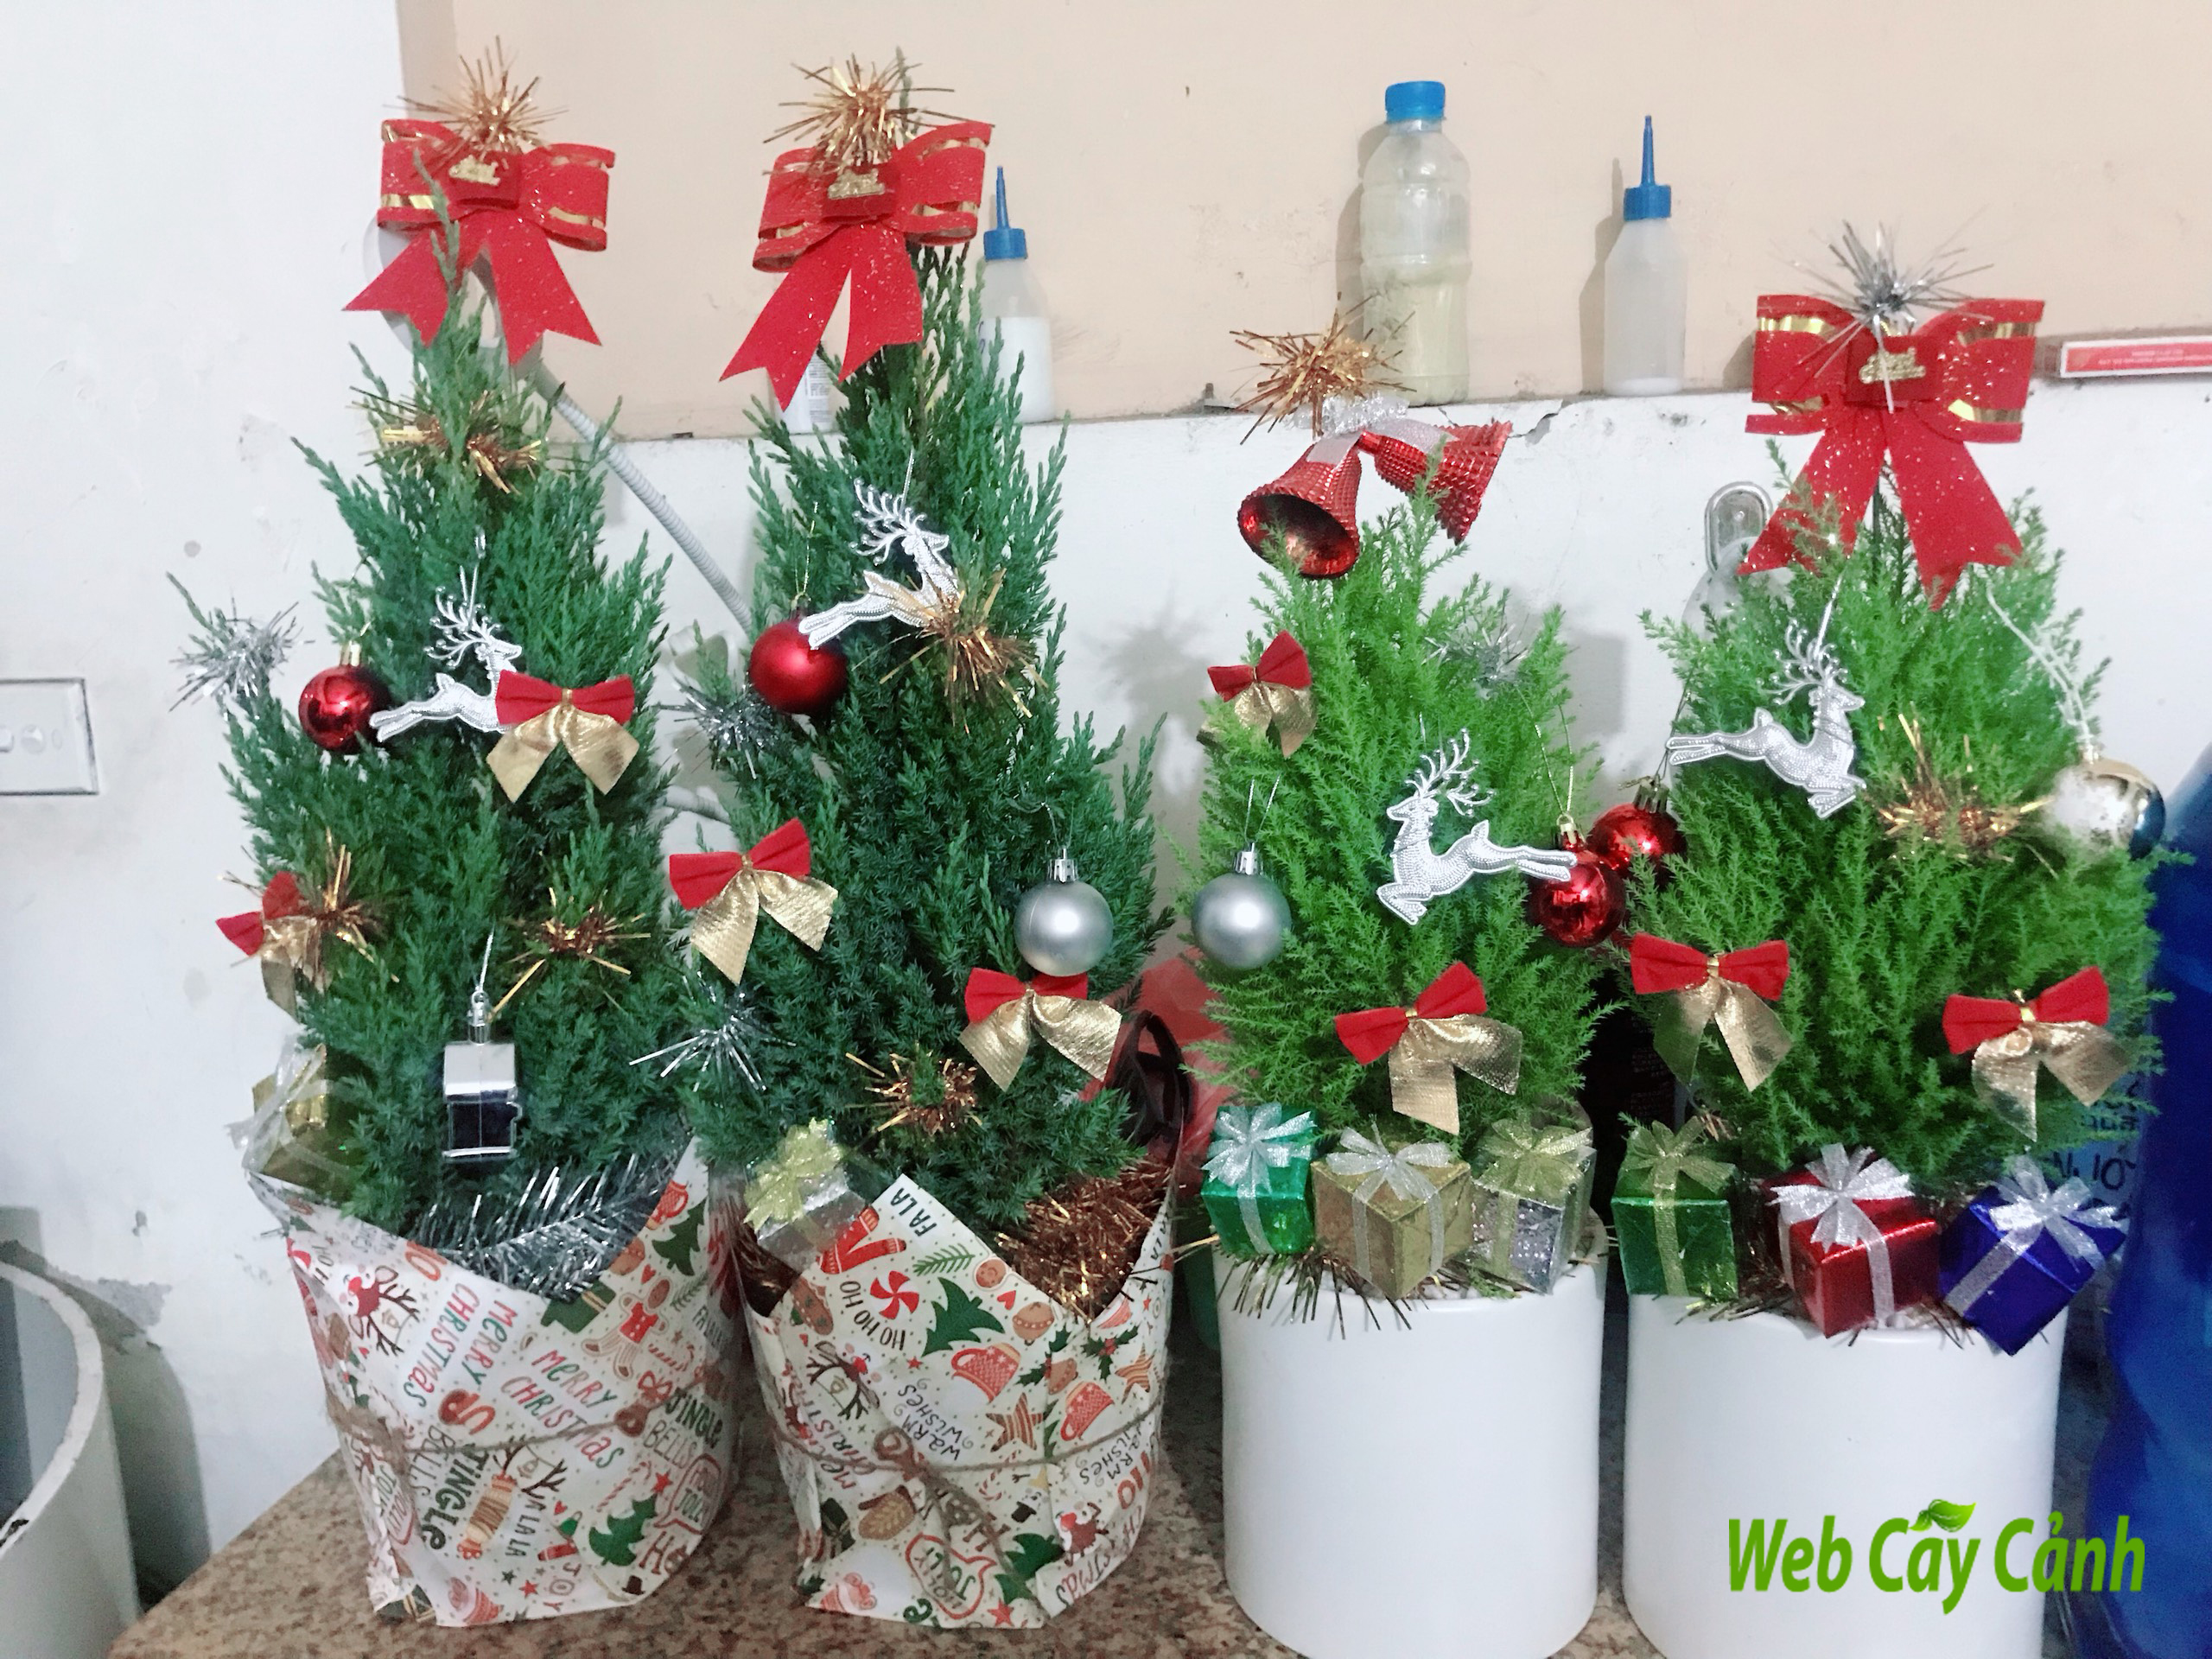 Mùa Giáng sinh đến rồi, và tại Mỹ, tặng cây cho nhau là một phong tục truyền thống. Hãy xem những bức ảnh về tặng cây trong dịp Noel ở Mỹ, nơi mà các gia đình và bạn bè sẽ cùng chia sẻ những niềm vui và hy vọng trong mùa lễ hội này.